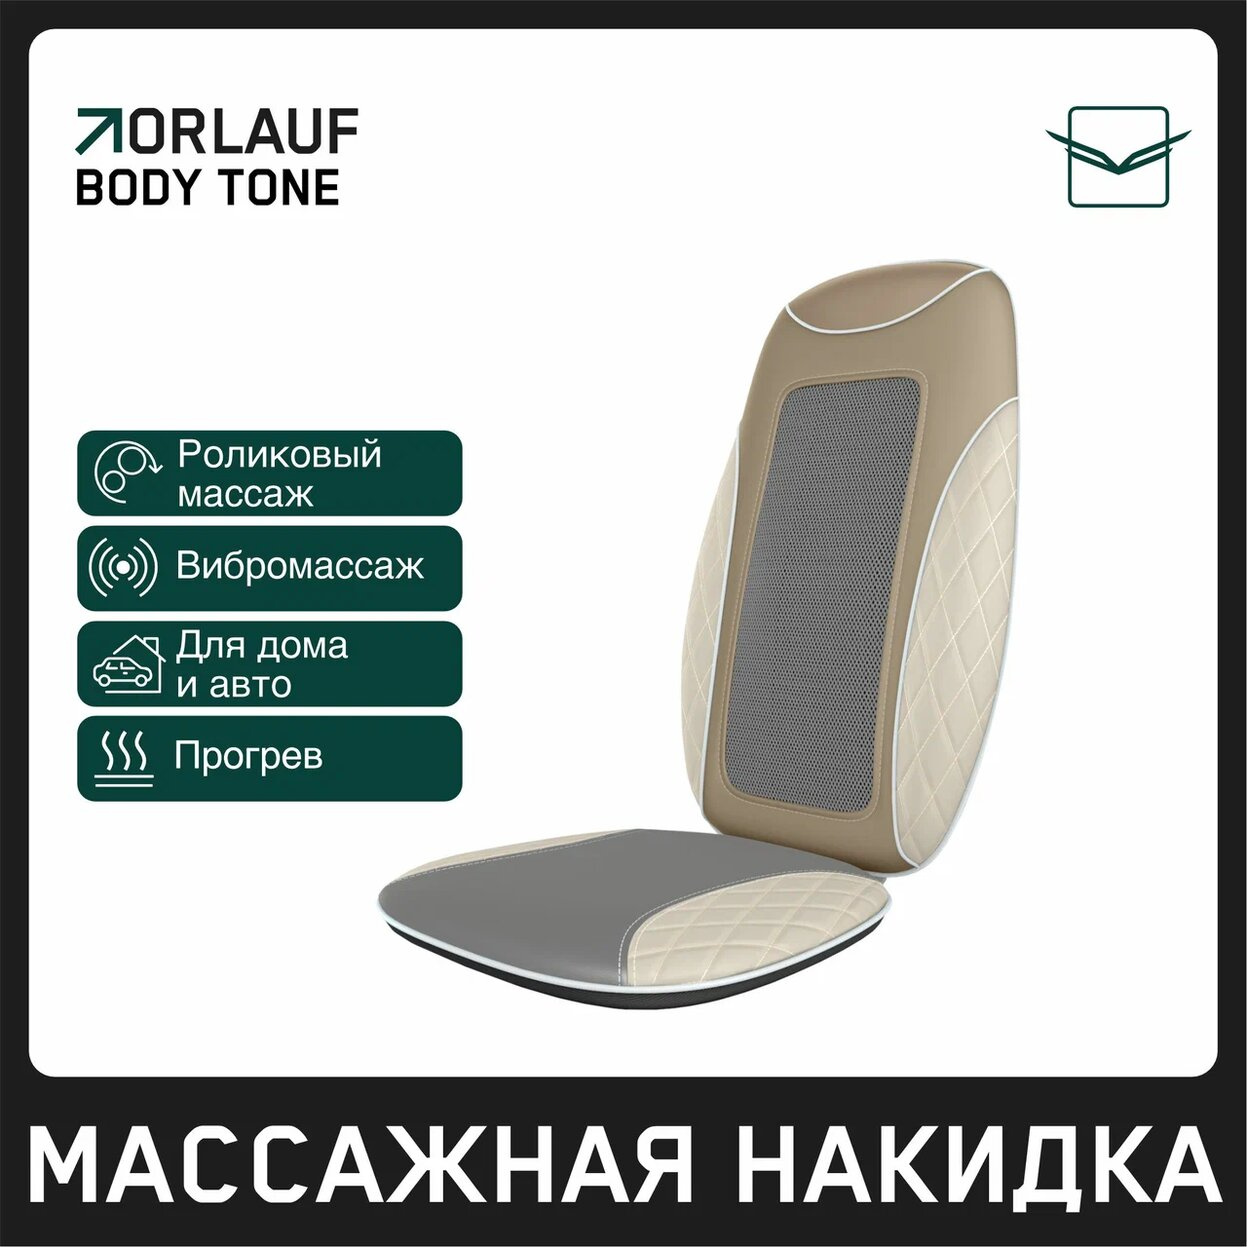 Orlauf Body Tone из каталога массажных накидок в Тольятти по цене 15400 ₽